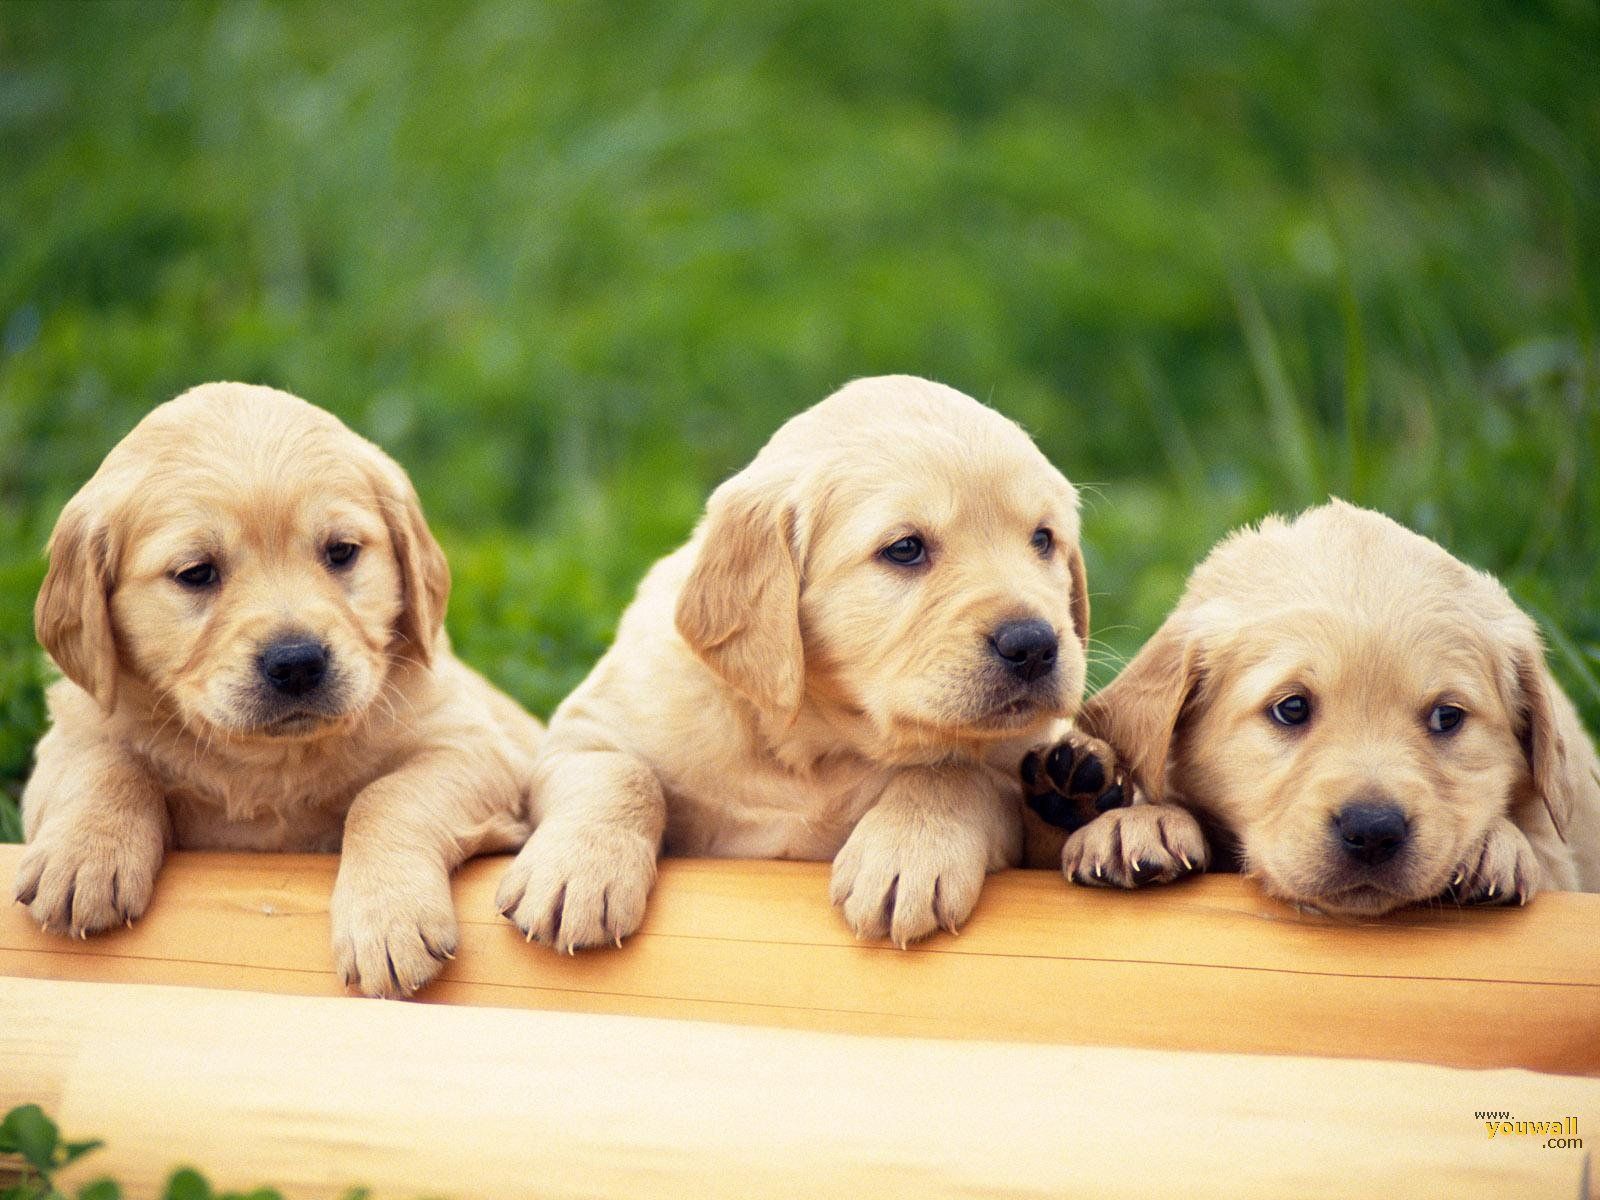 Fondos de perros 3D - Mejores fondos de perros 3D gratis - WallpaperAccess